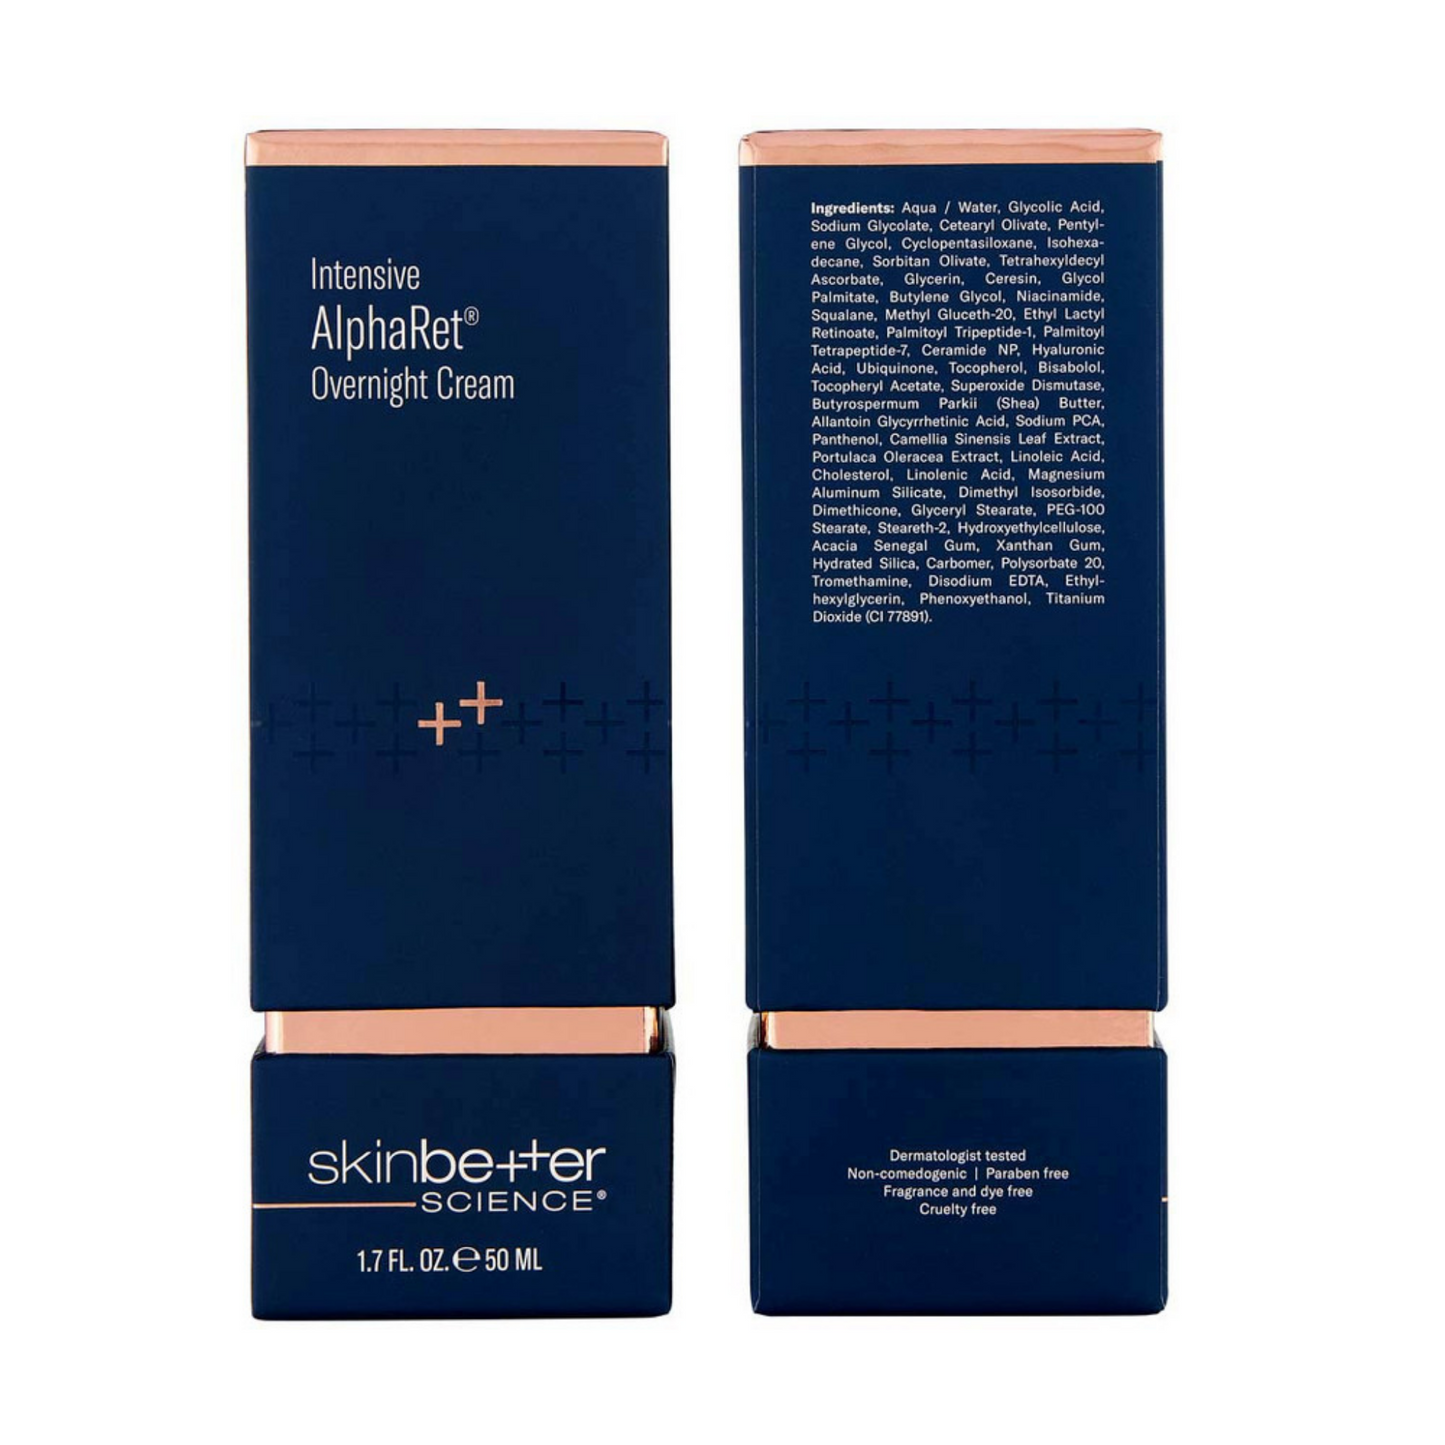 skinbetter science® Intensive AlphaRet Overnight Cream